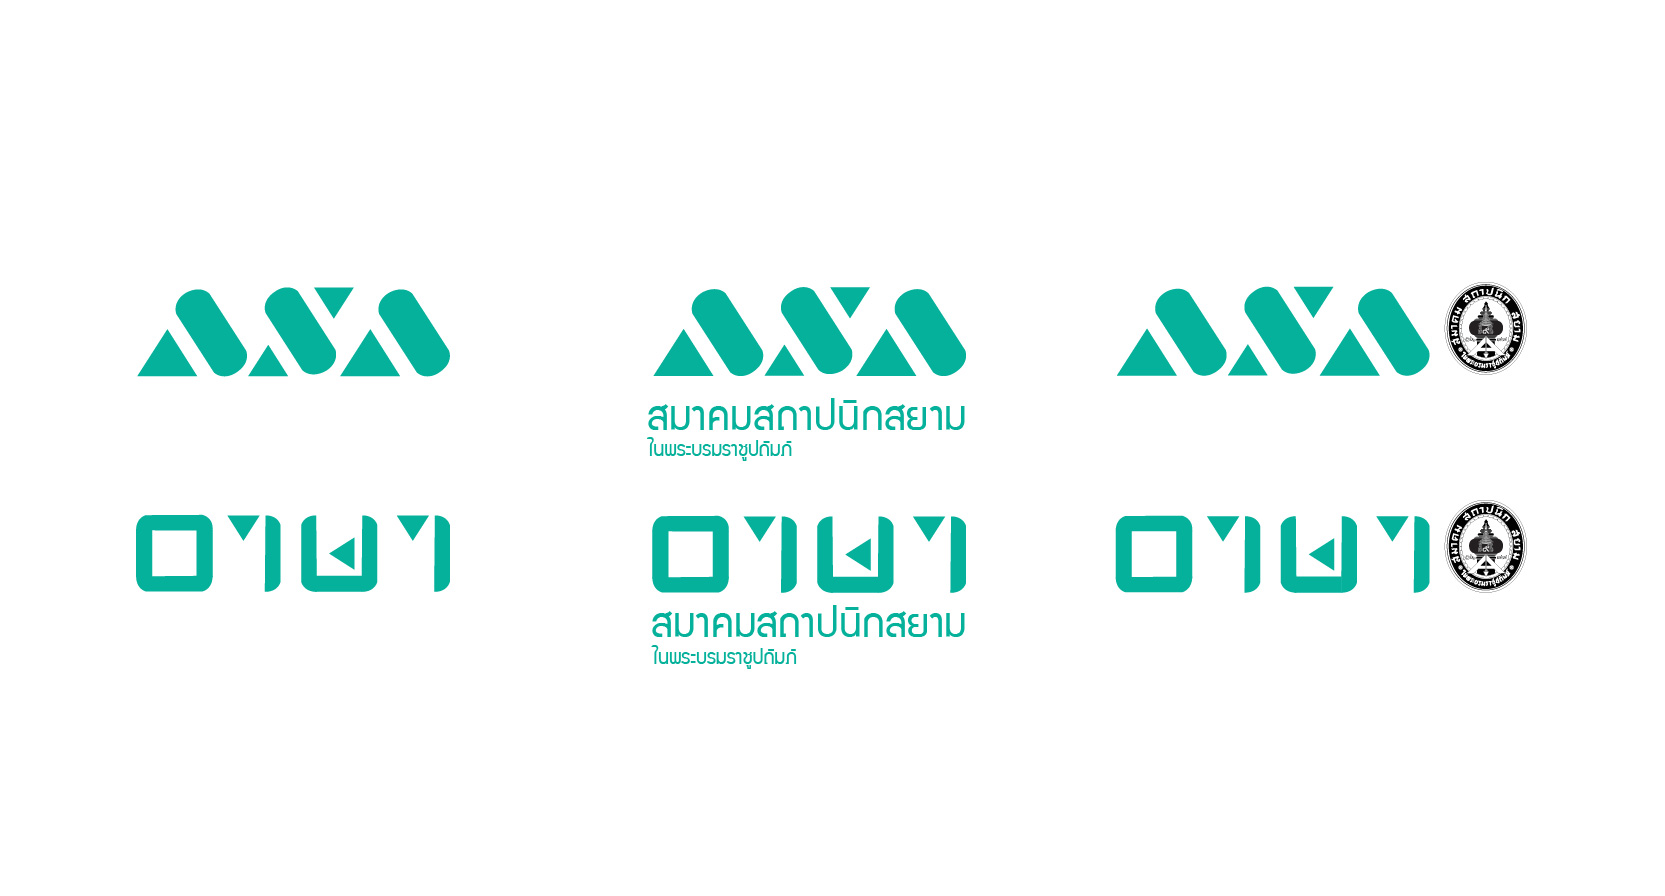 logo variations in green